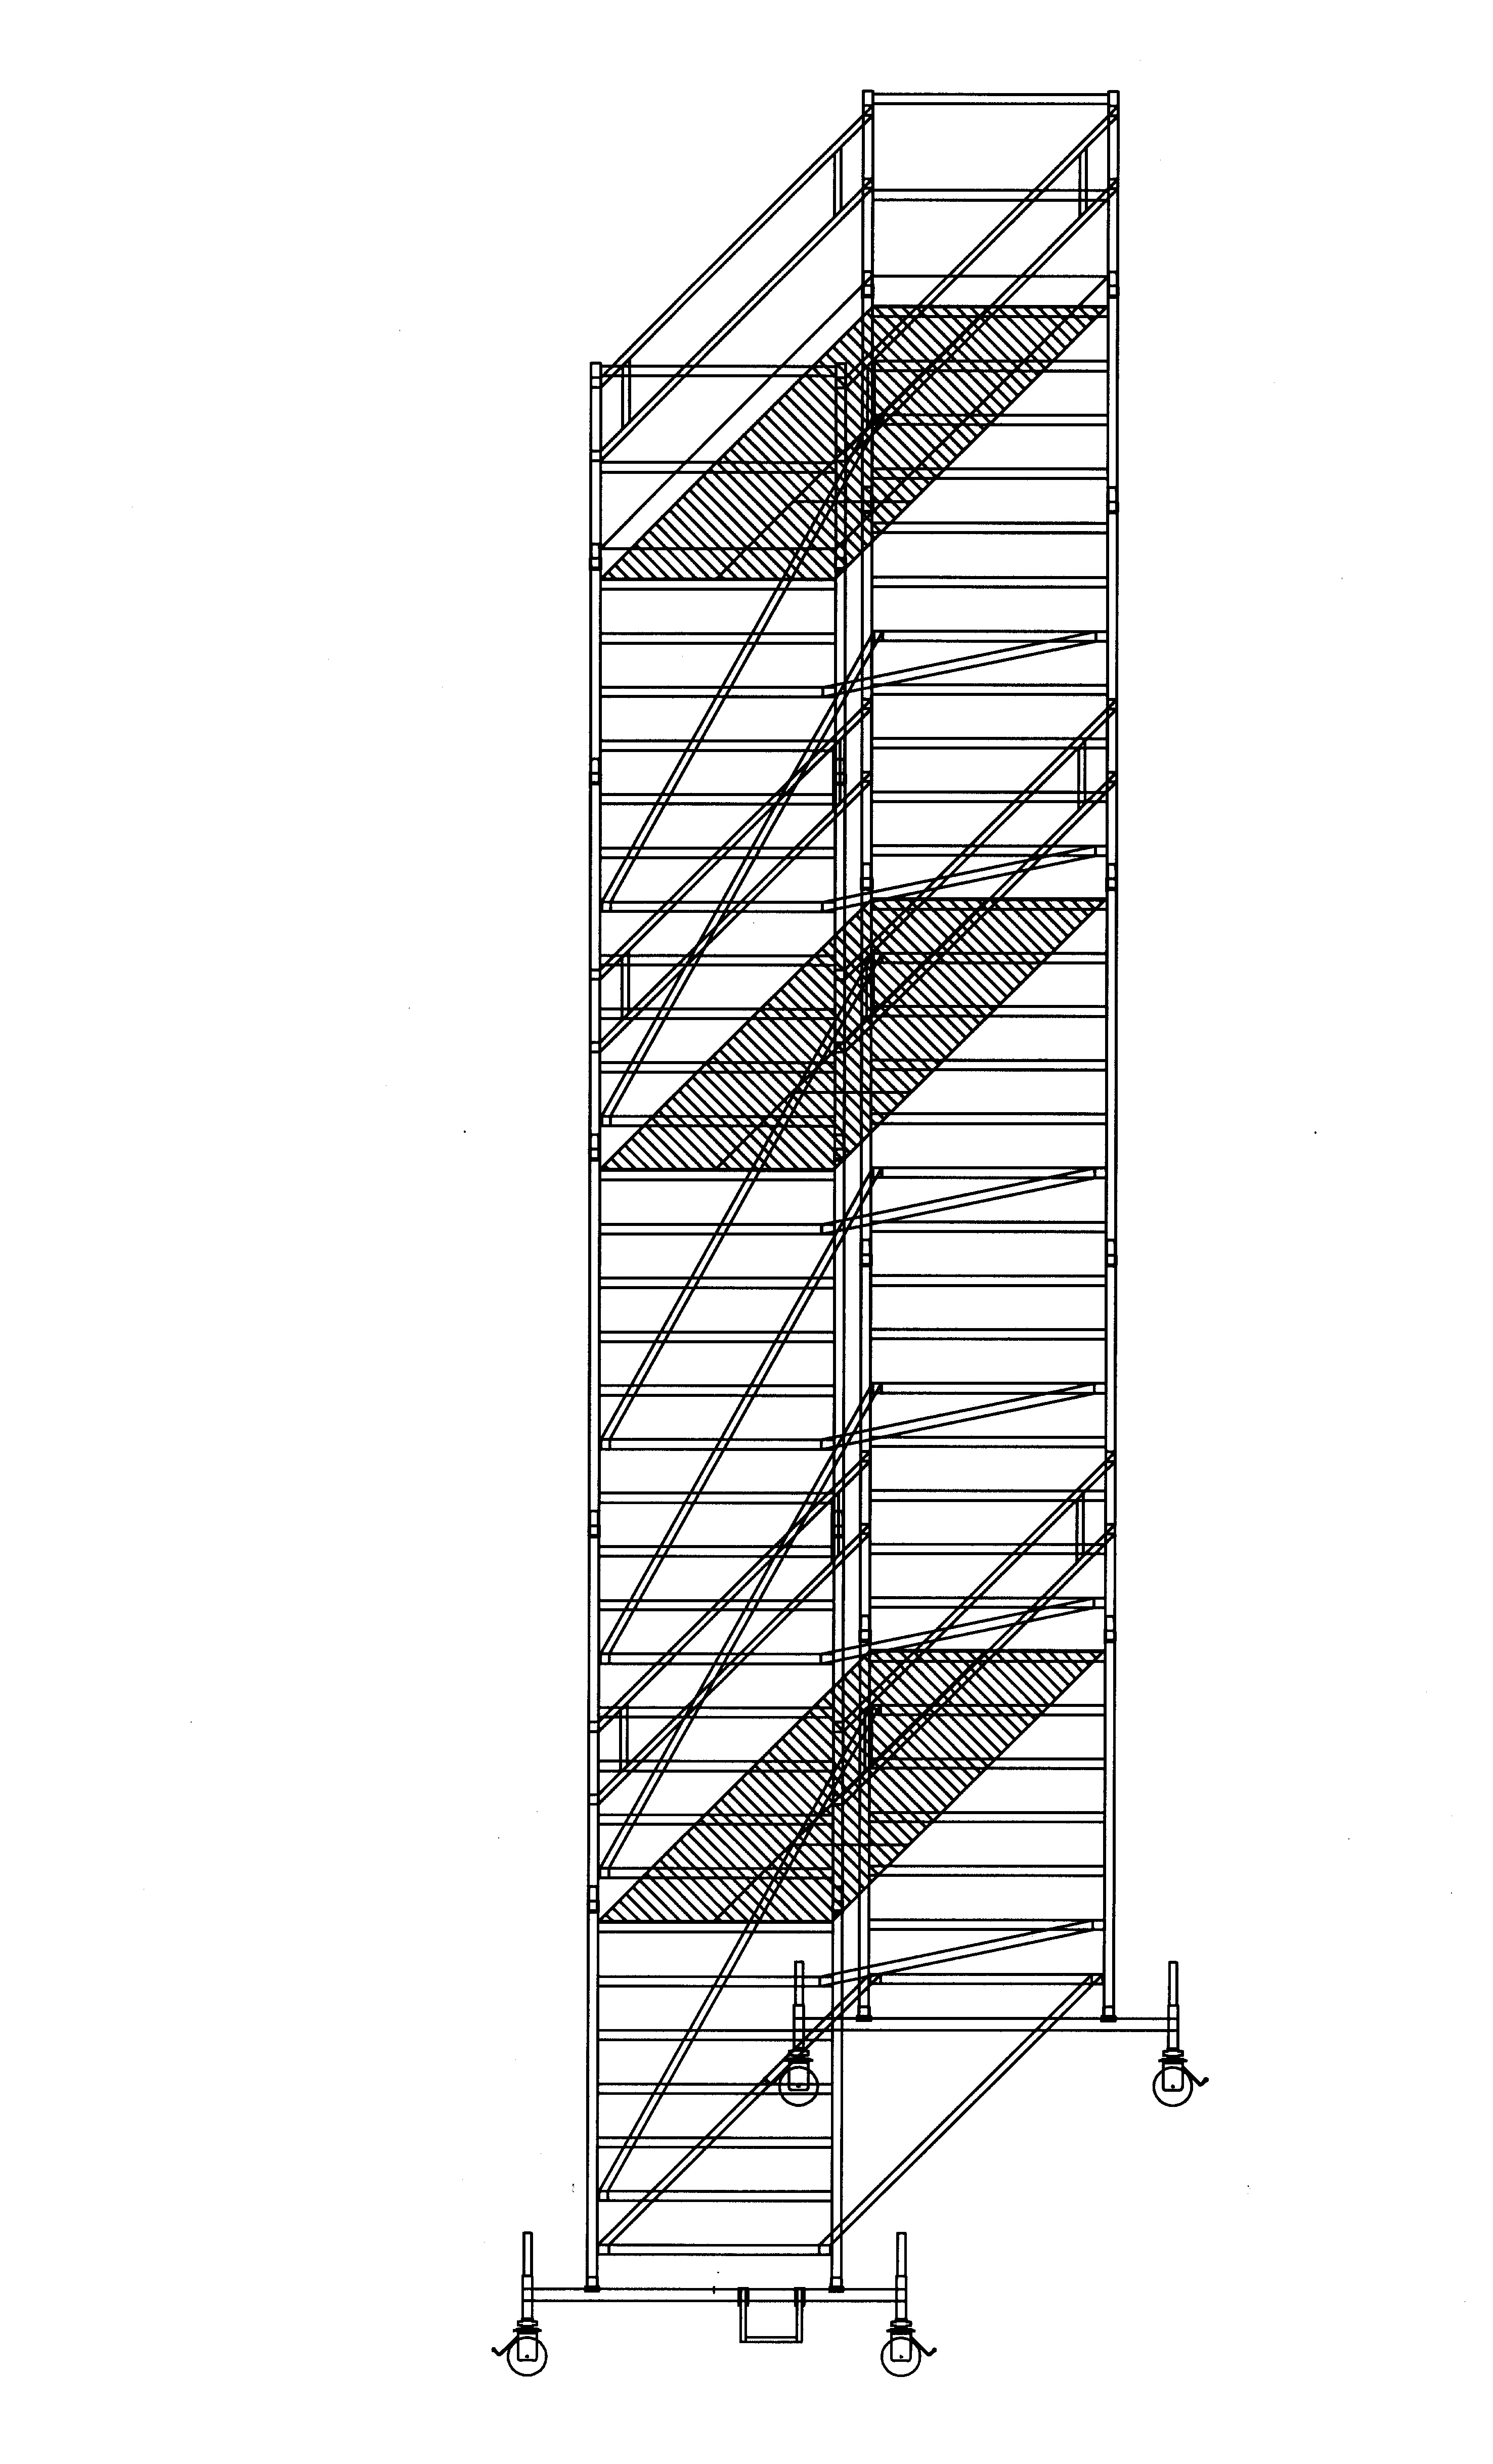 Aluminium-Rollgerüst mit Fahrbalken und Doppel-Plattform, Arbeitshöhe 5,00 m, Gerüstgröße 1,35 m x 2,45 m